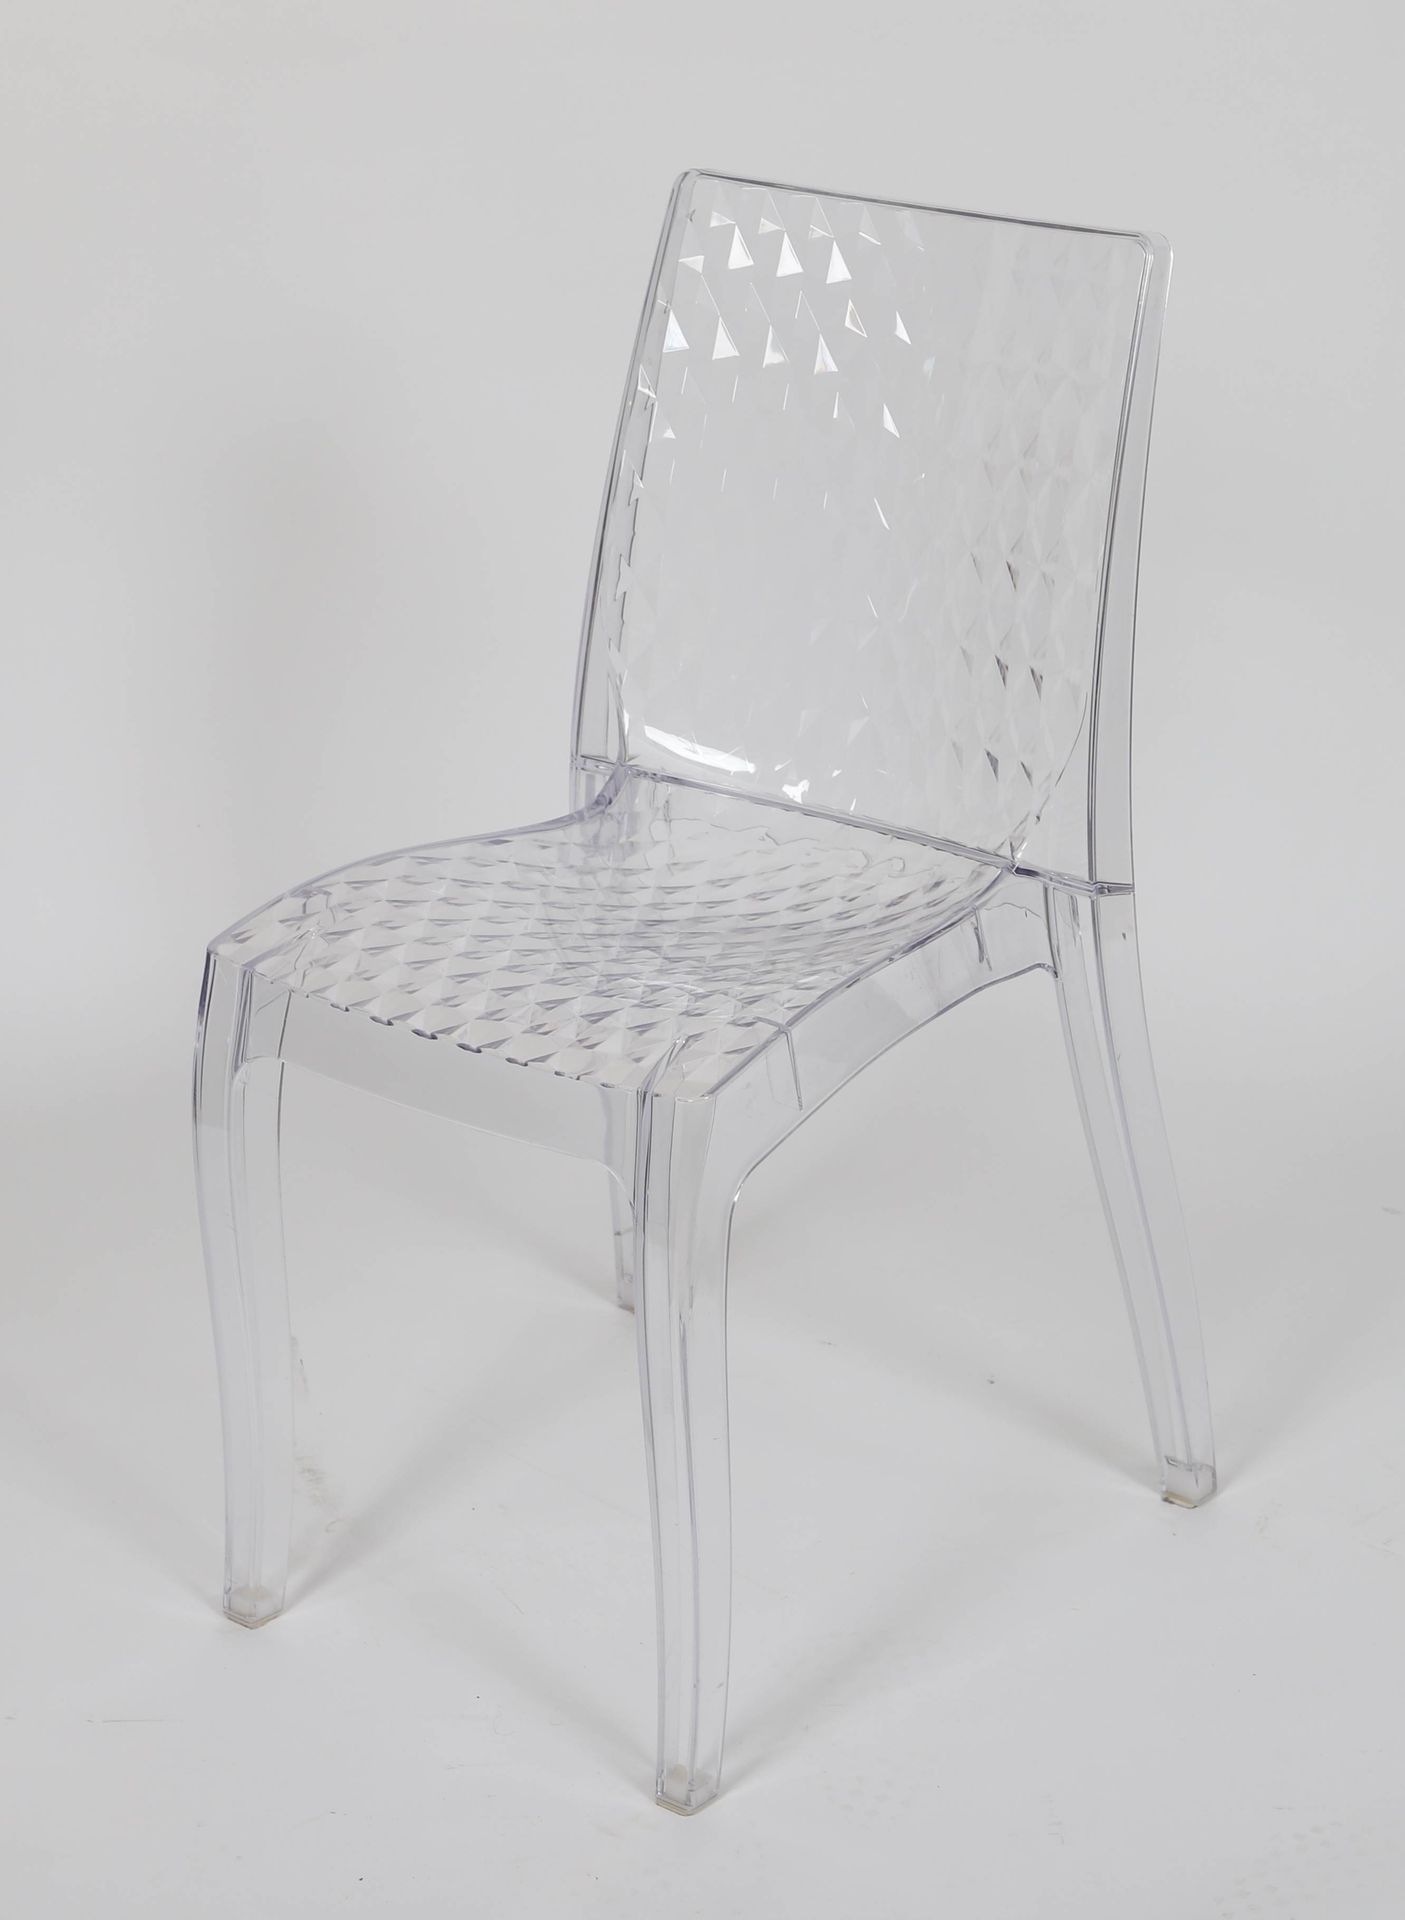 Null 卡特尔型椅子

由透明的聚碳酸酯制成

尺寸：高：84；宽：37；深：48厘米